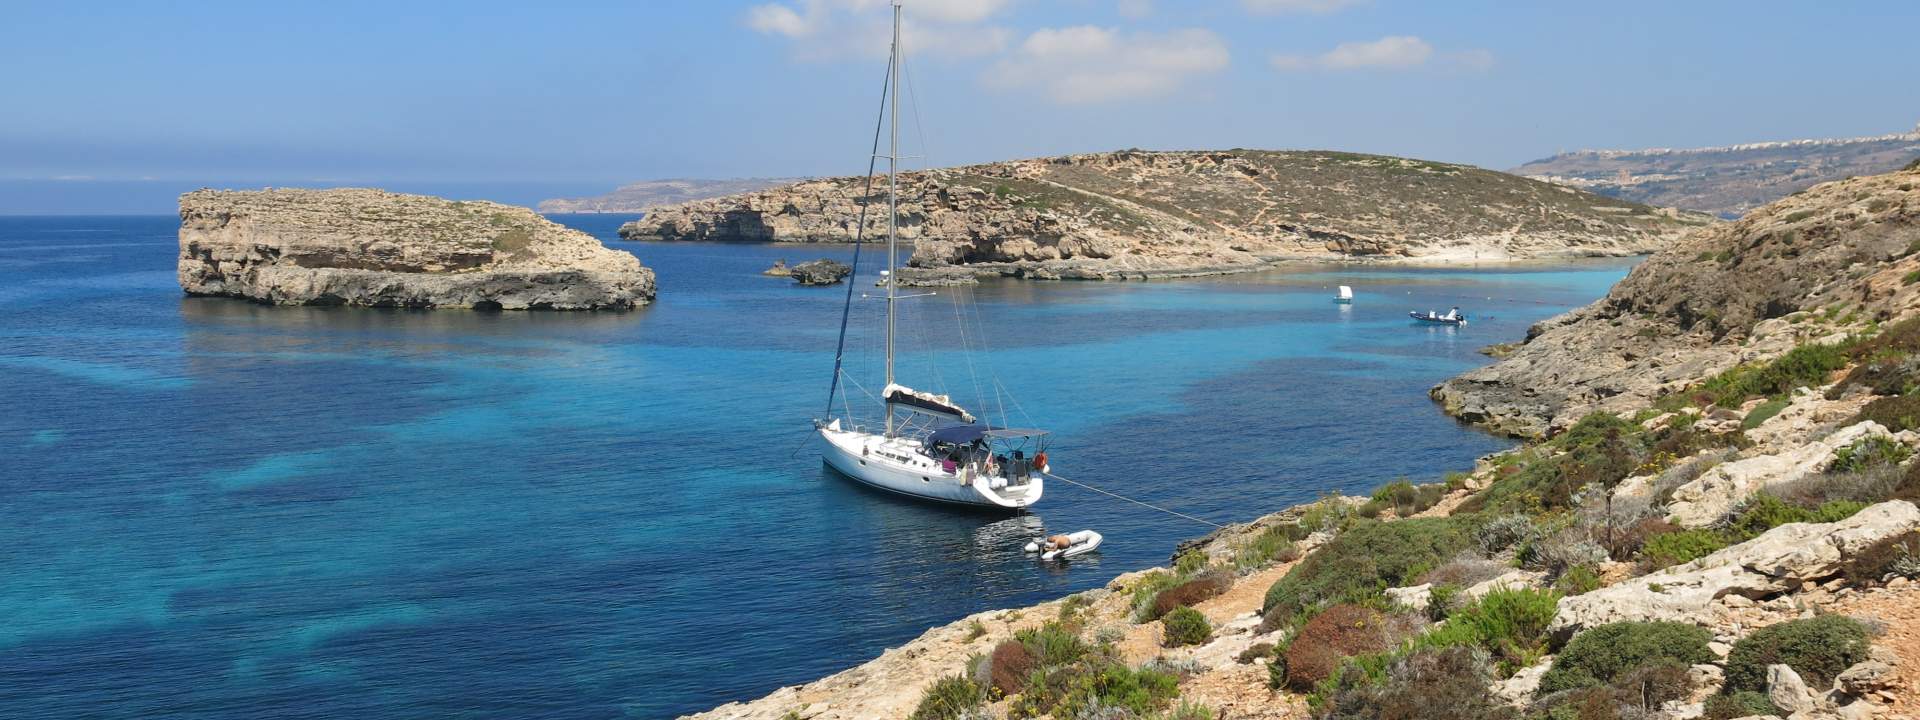 Откройте для себя острова Мальты